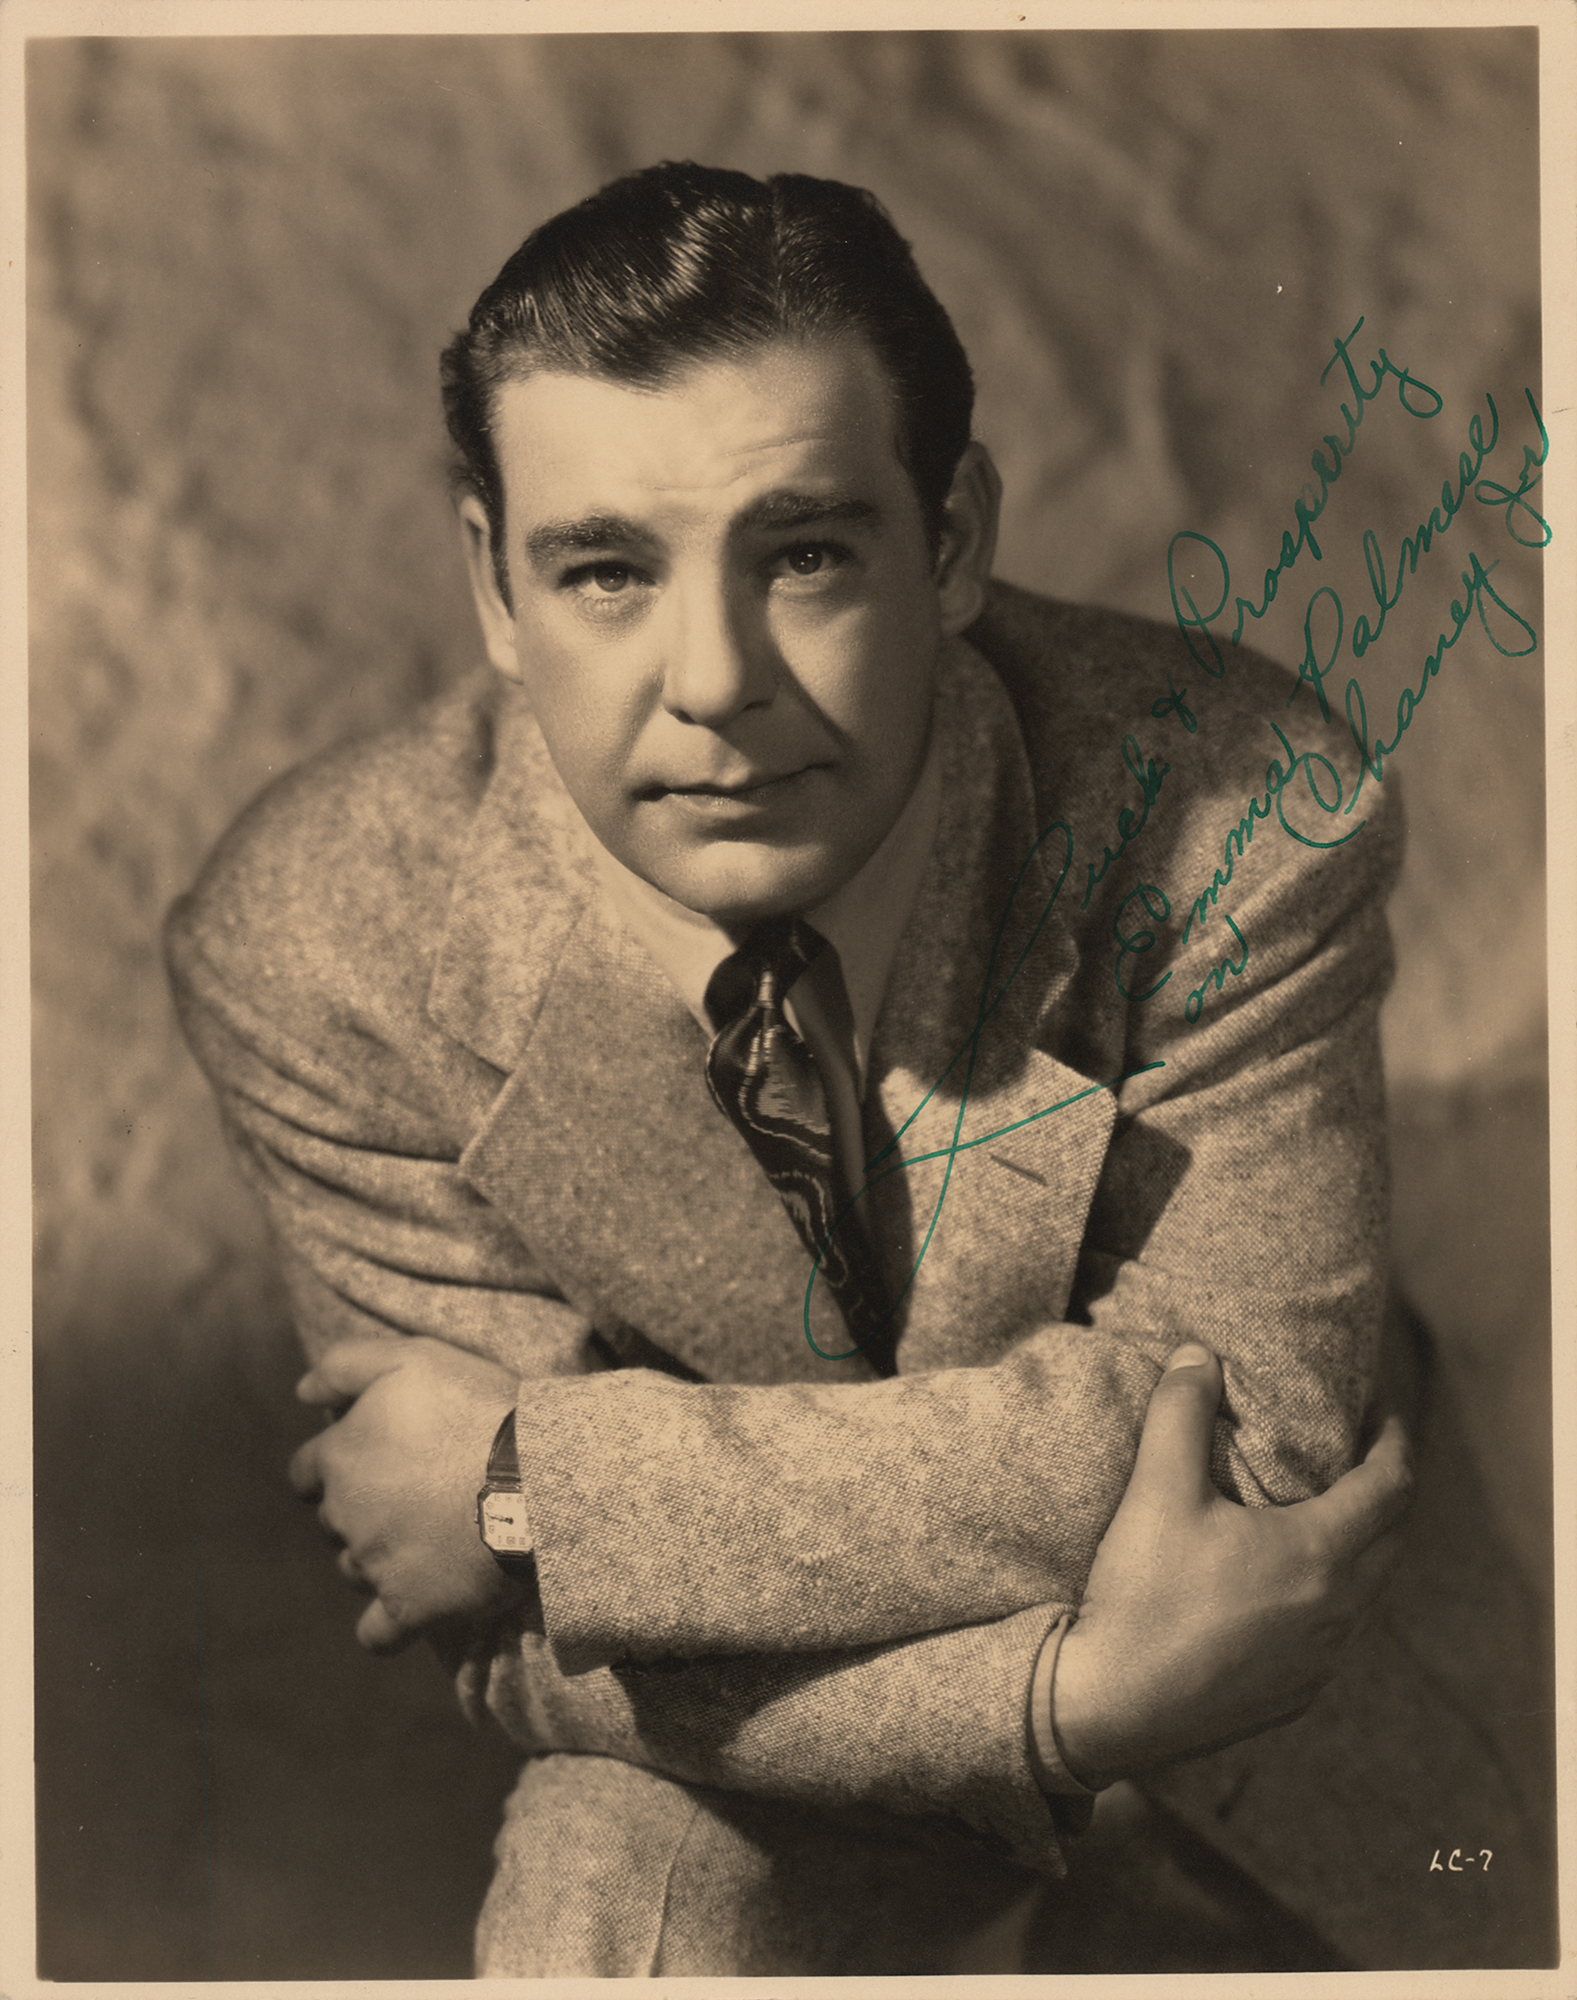 Lon Chaney, Jr. Signed Photograph | RR Auction